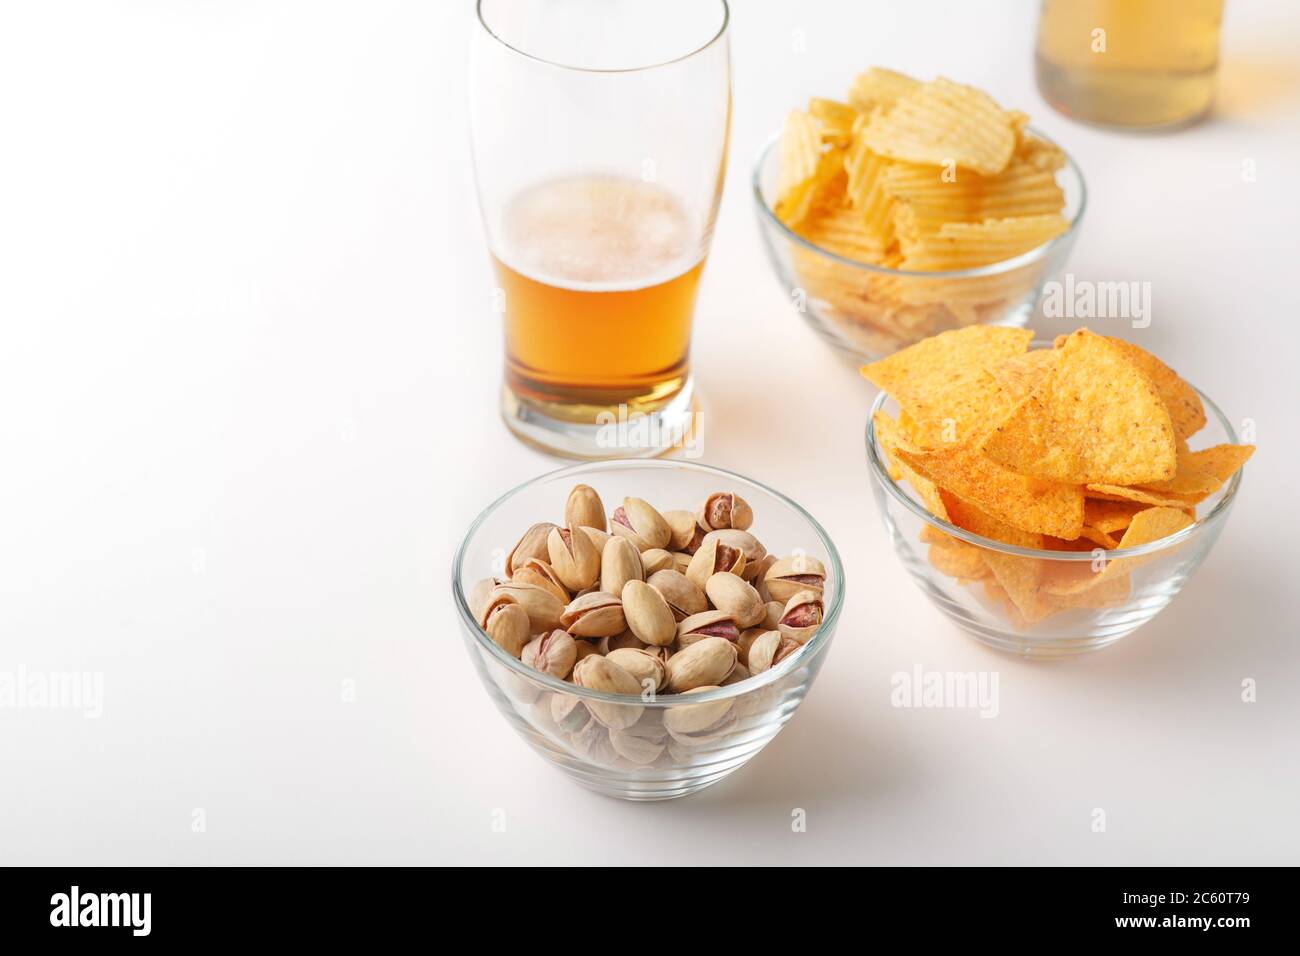 En-cas de bière. Lager brillant en verre, pistaches, nachos et chips Banque D'Images